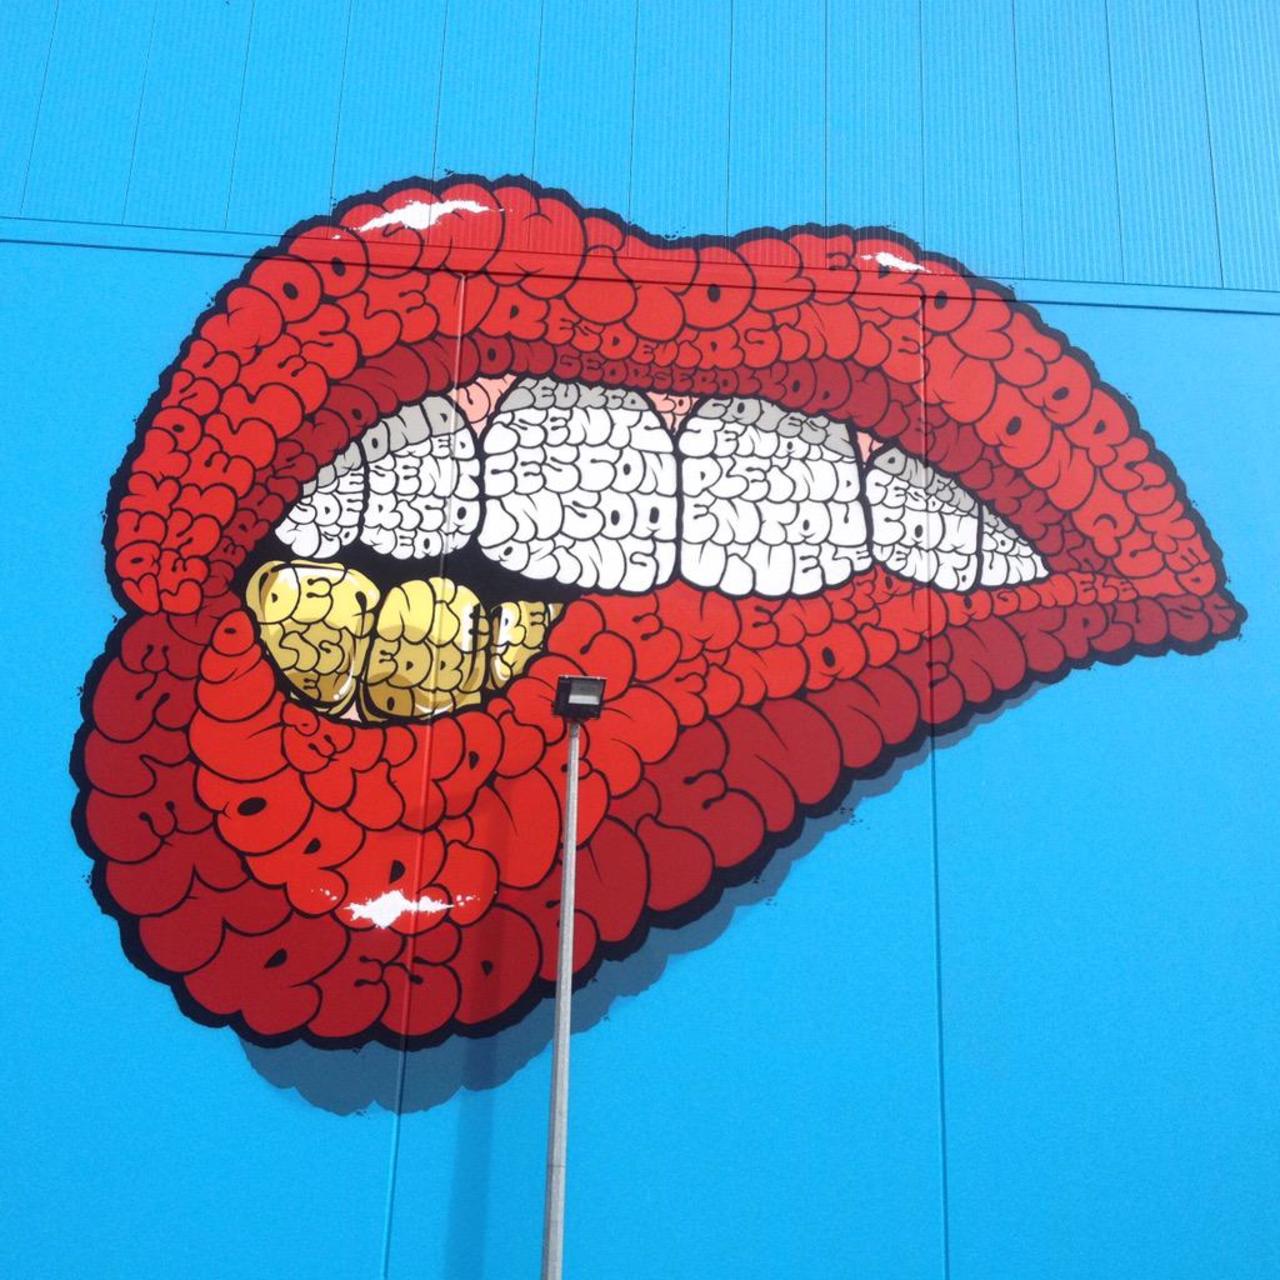 1of3 Detail from #tilt wall in Christchurch New Zealand #graffiti #streetart #mural #streetartnz http://t.co/rXO9hf1uk8